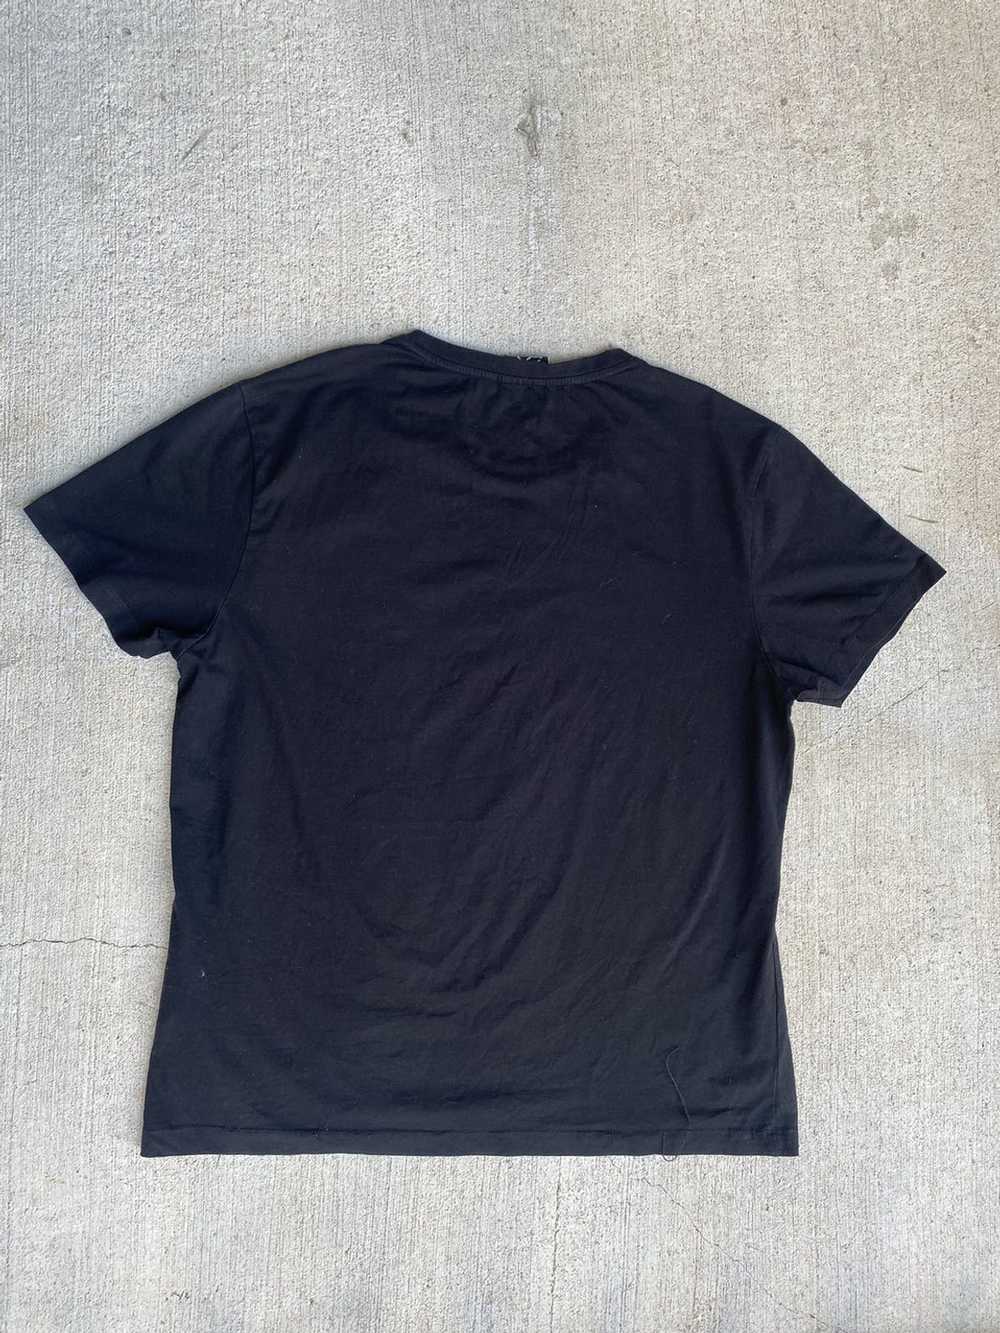 Vintage Vintage Black Lion Short Sleeve T-Shirt - image 2